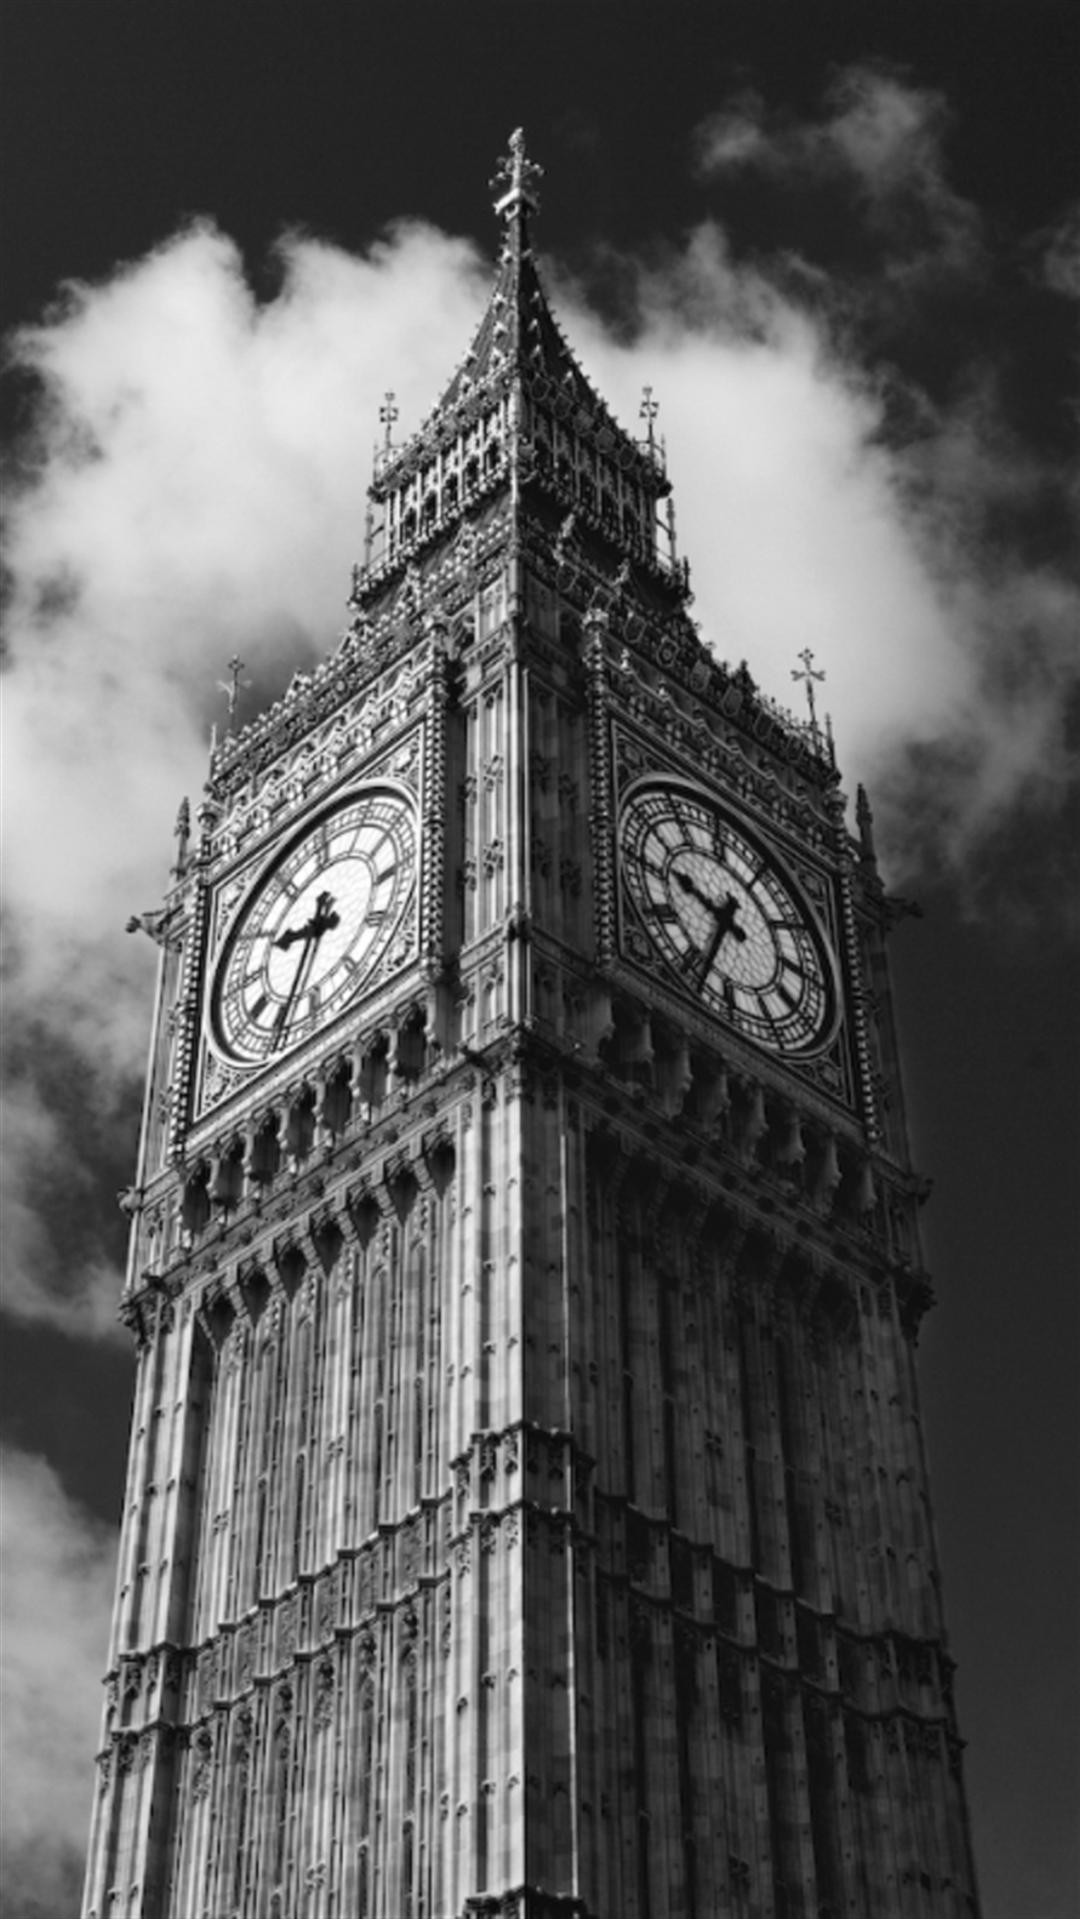 런던 배경 흑백,탑,건축물,검정색과 흰색,흑백 사진,건물